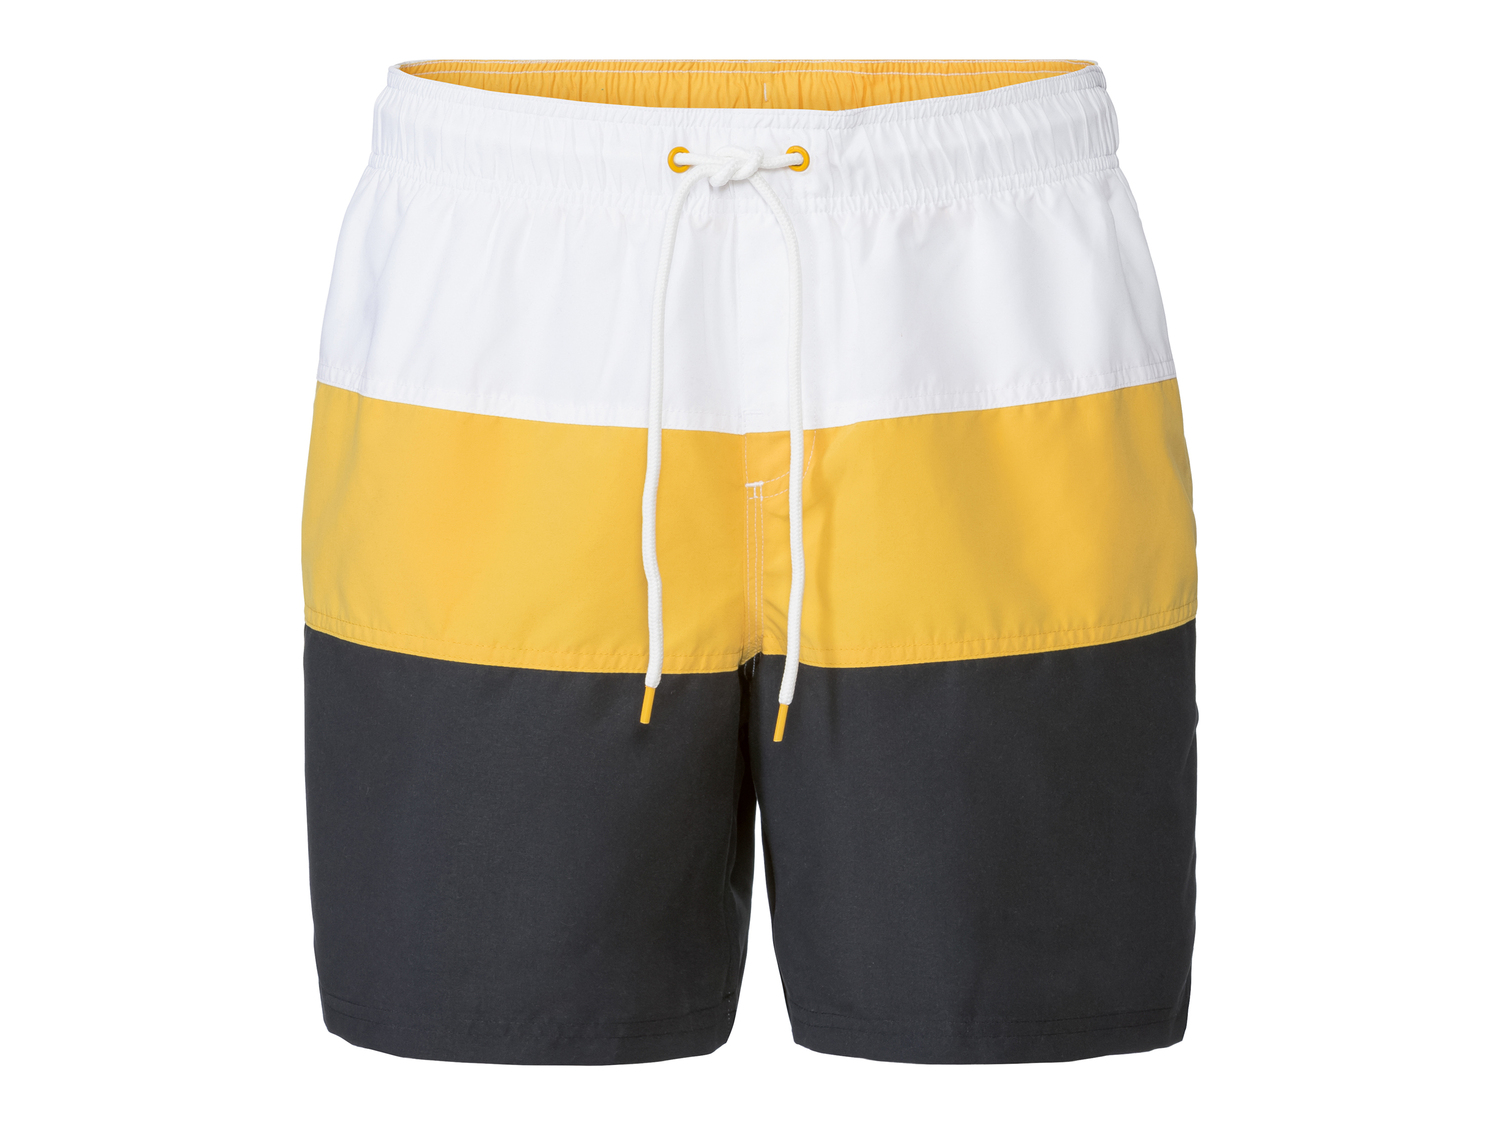 Shorts mare da uomo Livergy, prezzo 5.99 &#8364; 
Misure: S-XL
Taglie disponibili

Caratteristiche

- ...